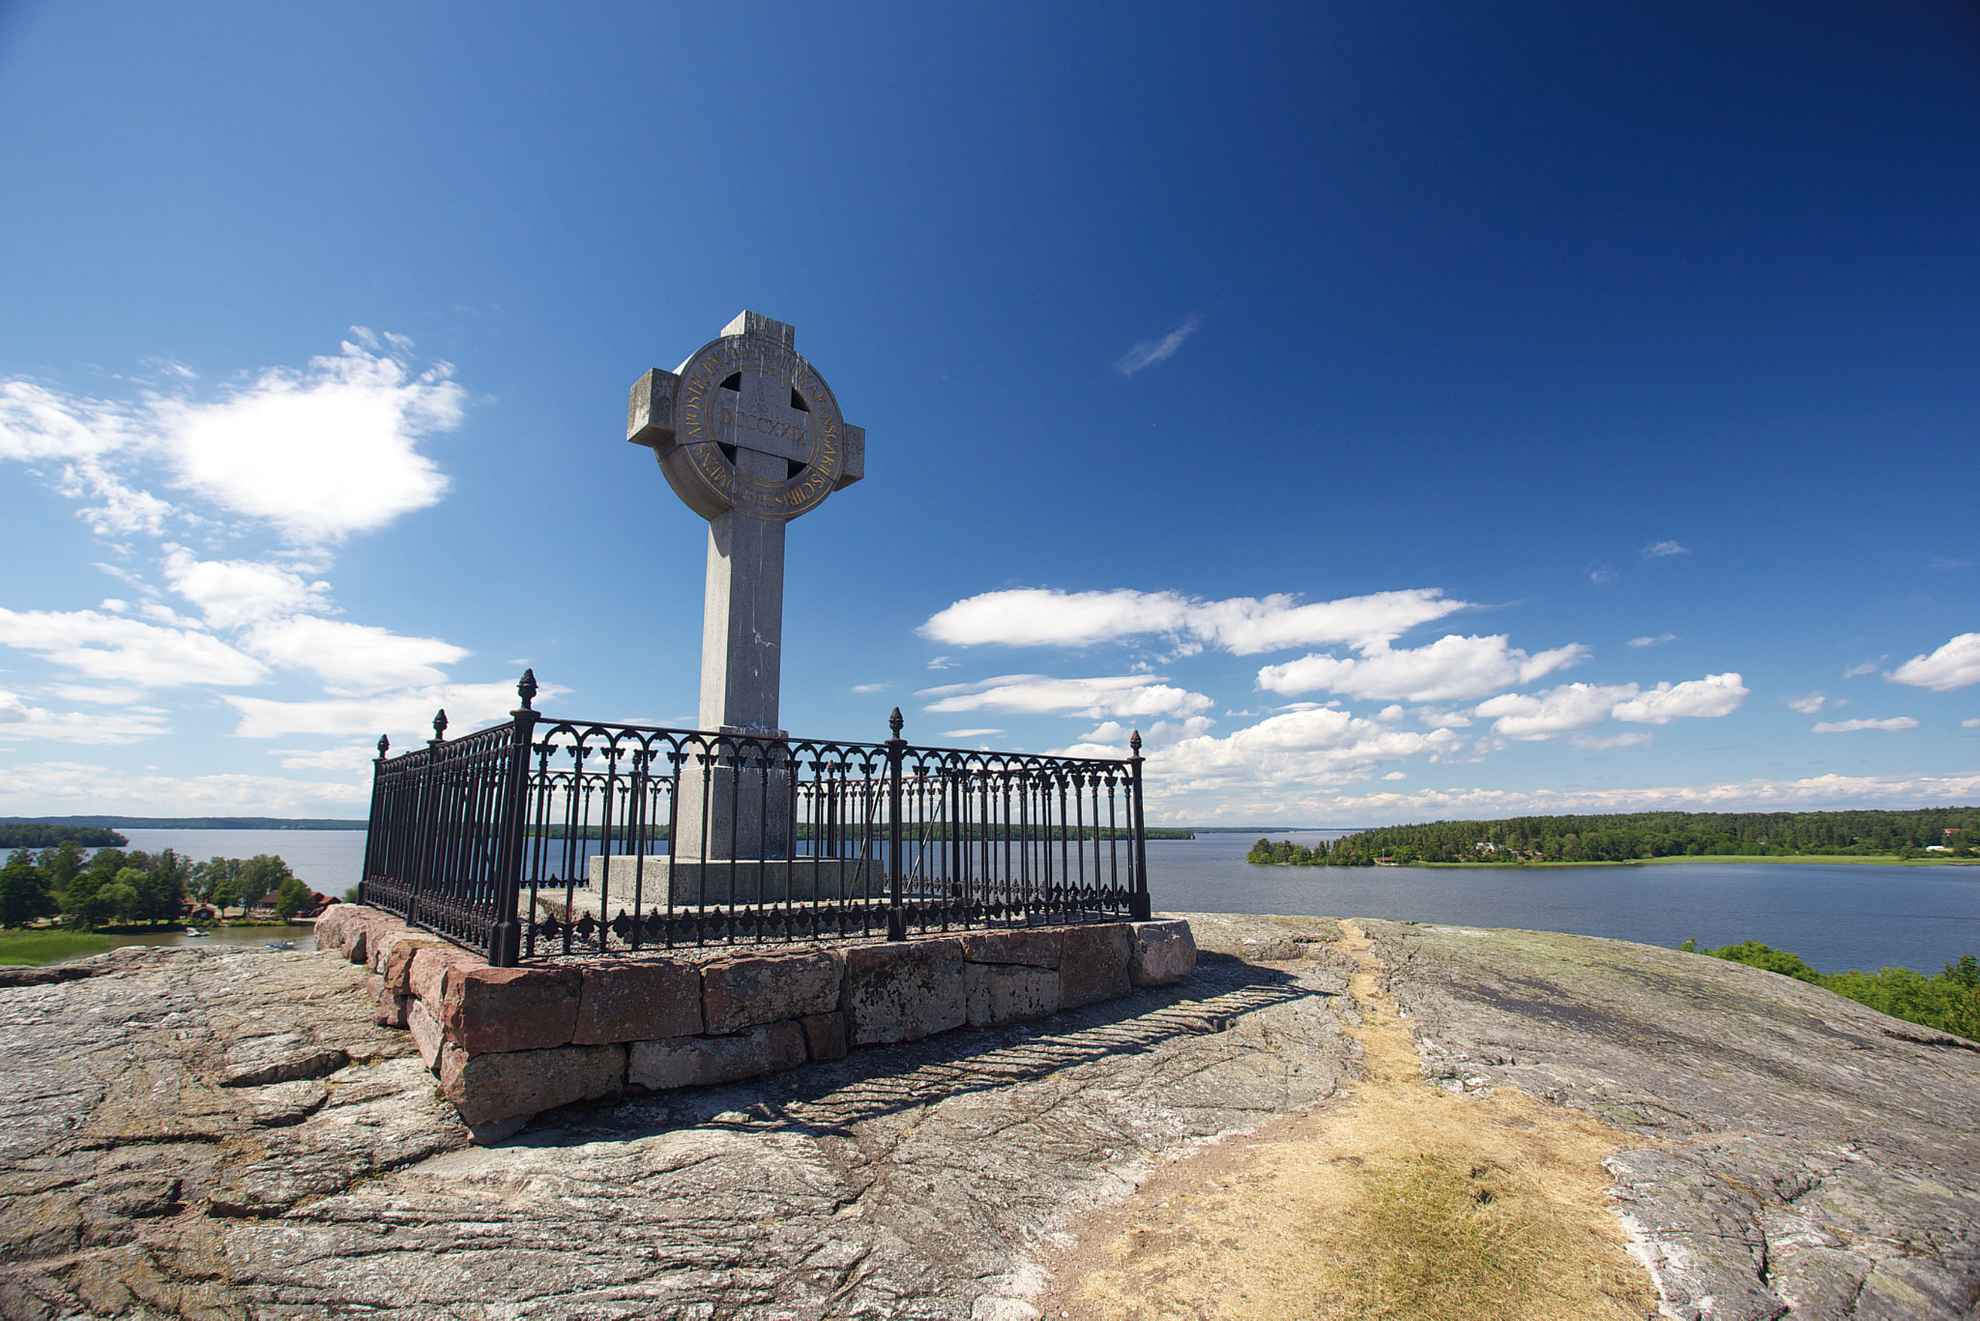 Das Ansgarkreuz steht auf einem kahlen Felsen. Im Hintergrund sind der See Mälaren, kleine Inseln und ein blauer Himmel zu sehen.